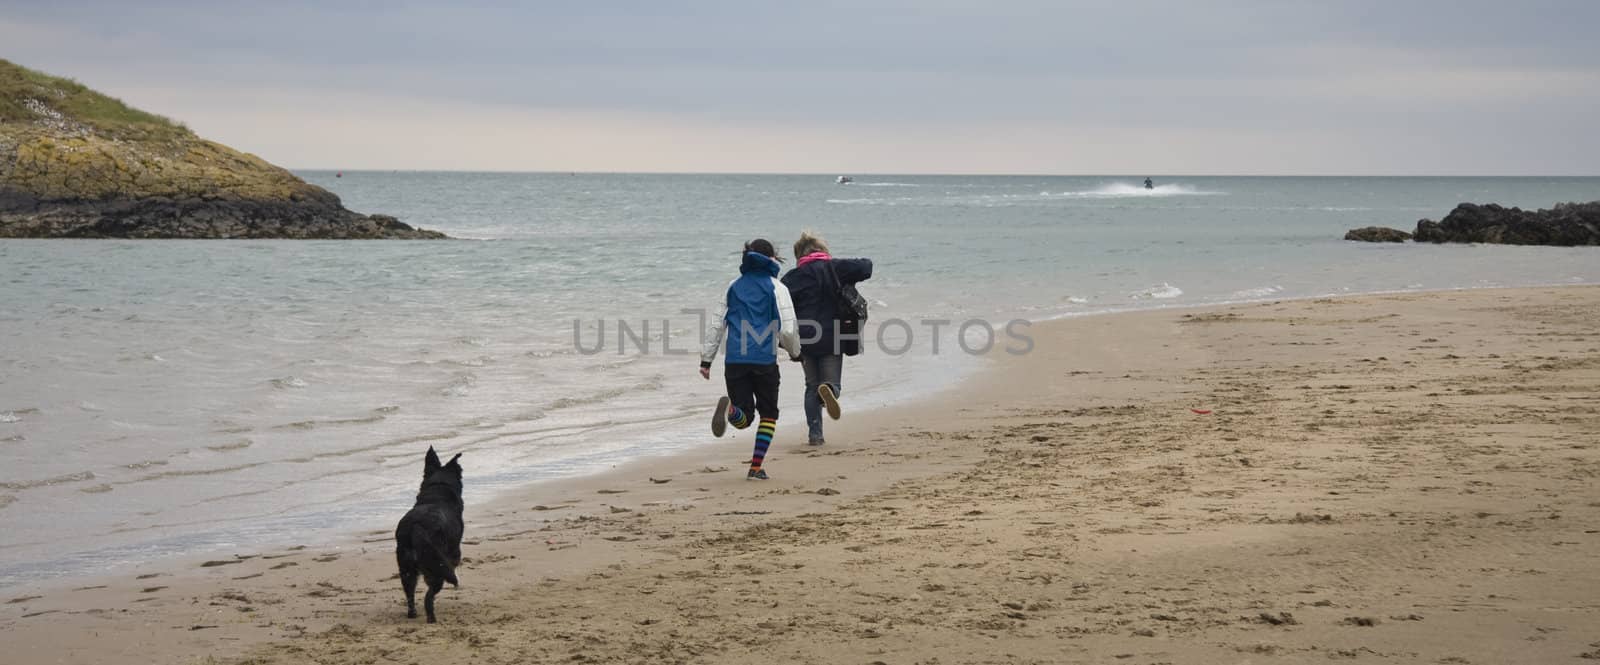 Two girls having fun on the seas edge.